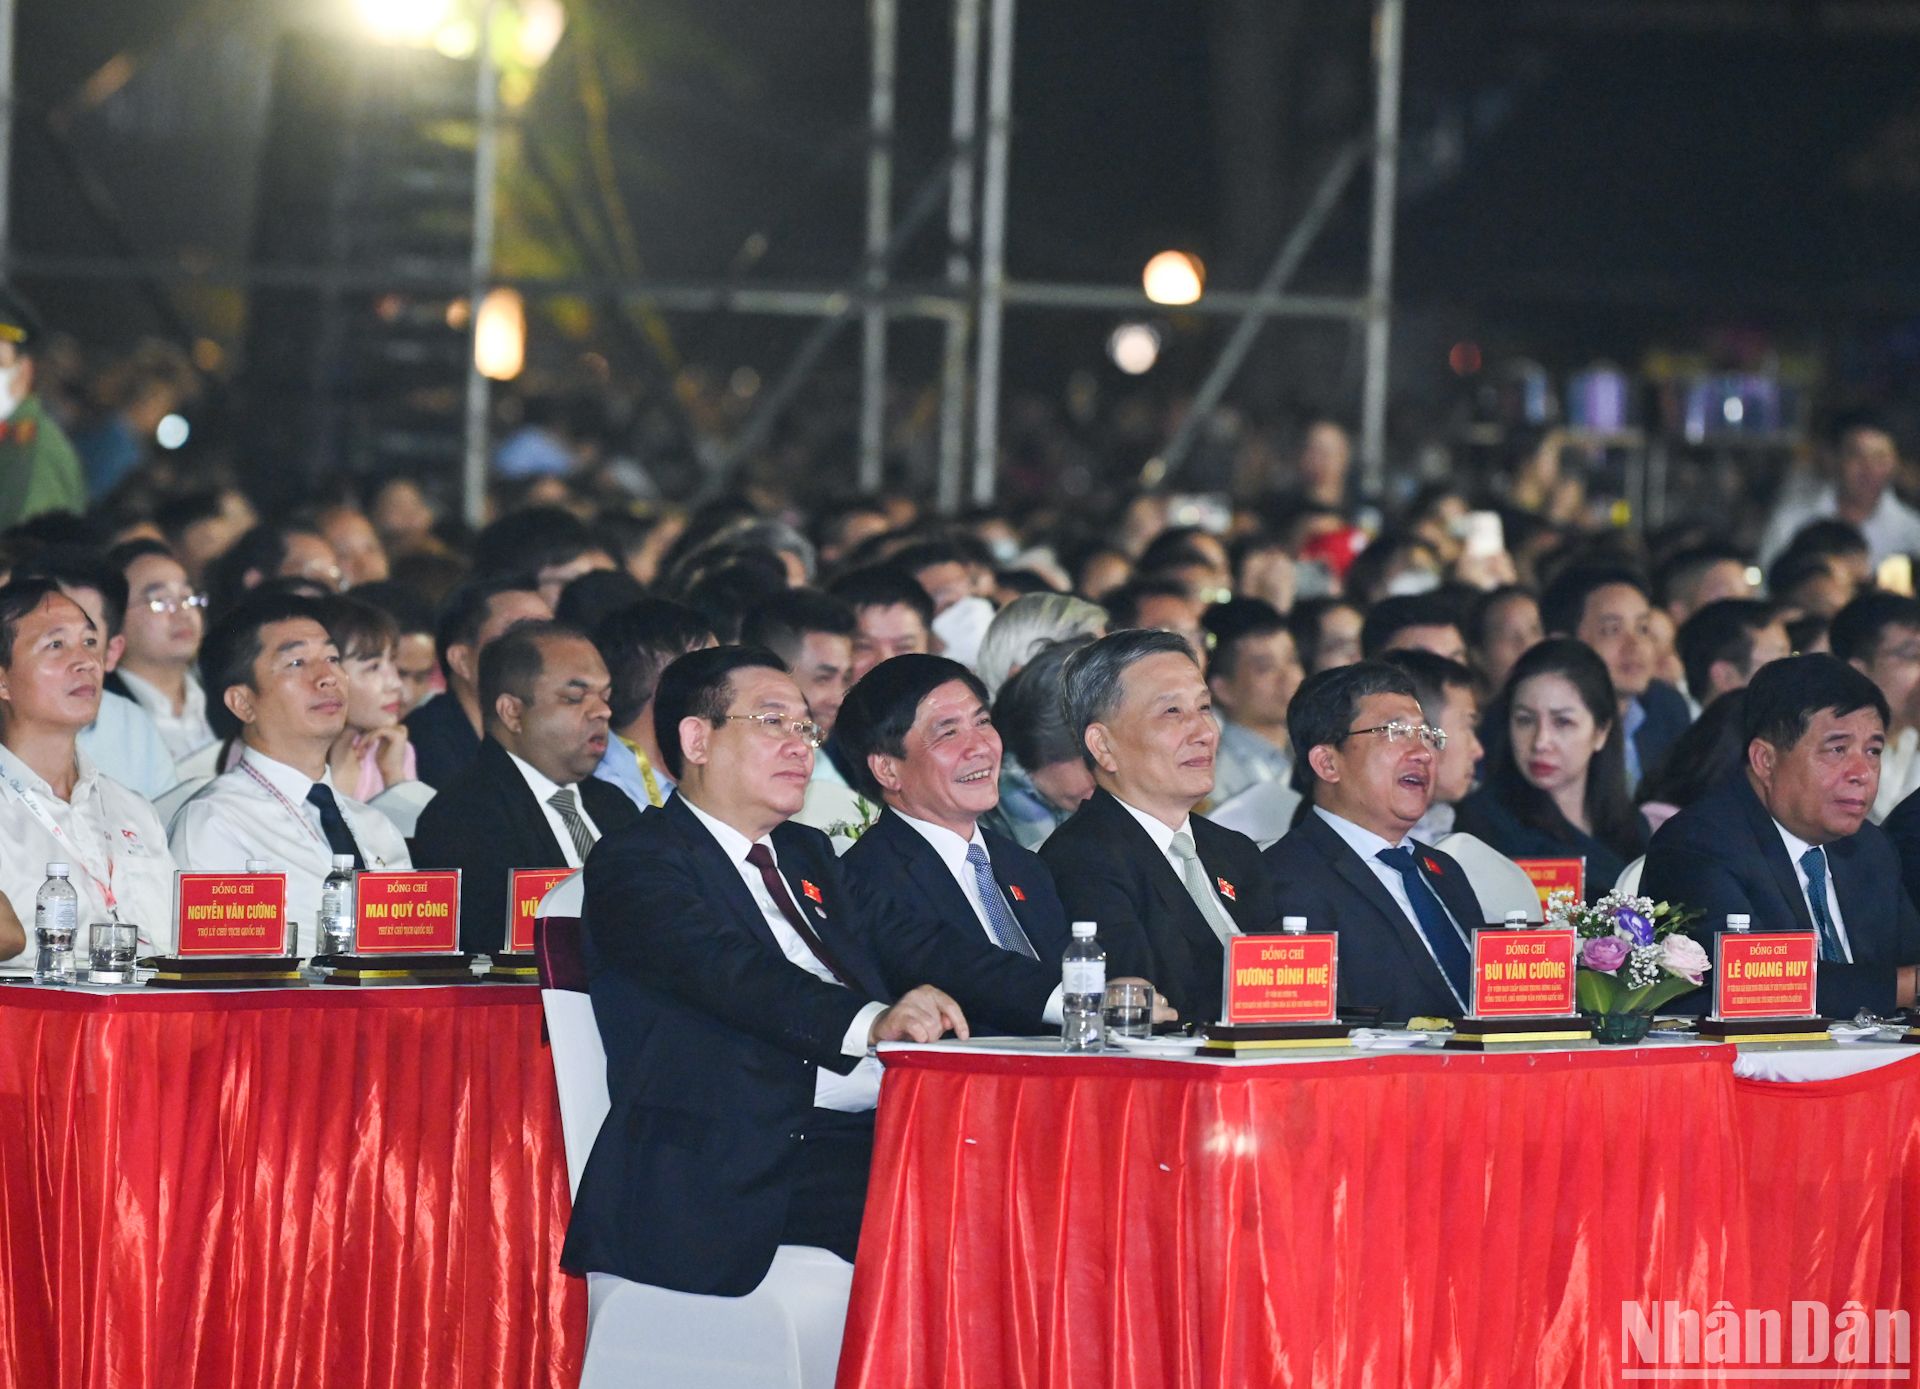 Chủ tịch Quốc hội Vương Đình Huệ cùng các đồng chí lãnh đạo Đảng, Nhà nước và các đại biểu dự chương trình.